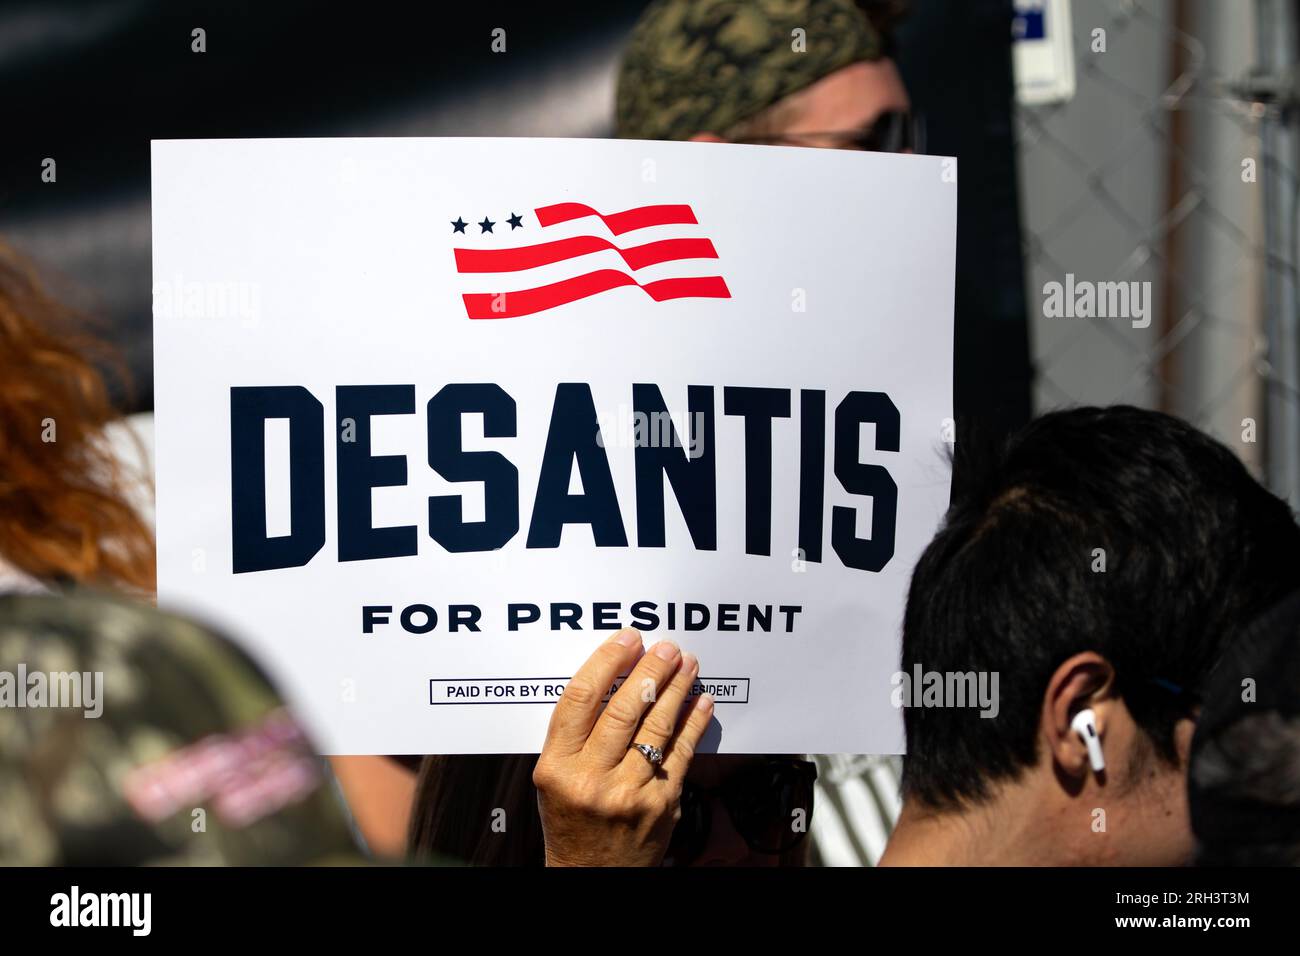 Des Moines, Iowa, EE.UU. - 12 de agosto de 2023: Un partidario del gobernador de Florida Ron DeSantis sostiene un cartel en la feria estatal de Iowa en Des Moines, Iowa, Estados Unidos. Foto de stock